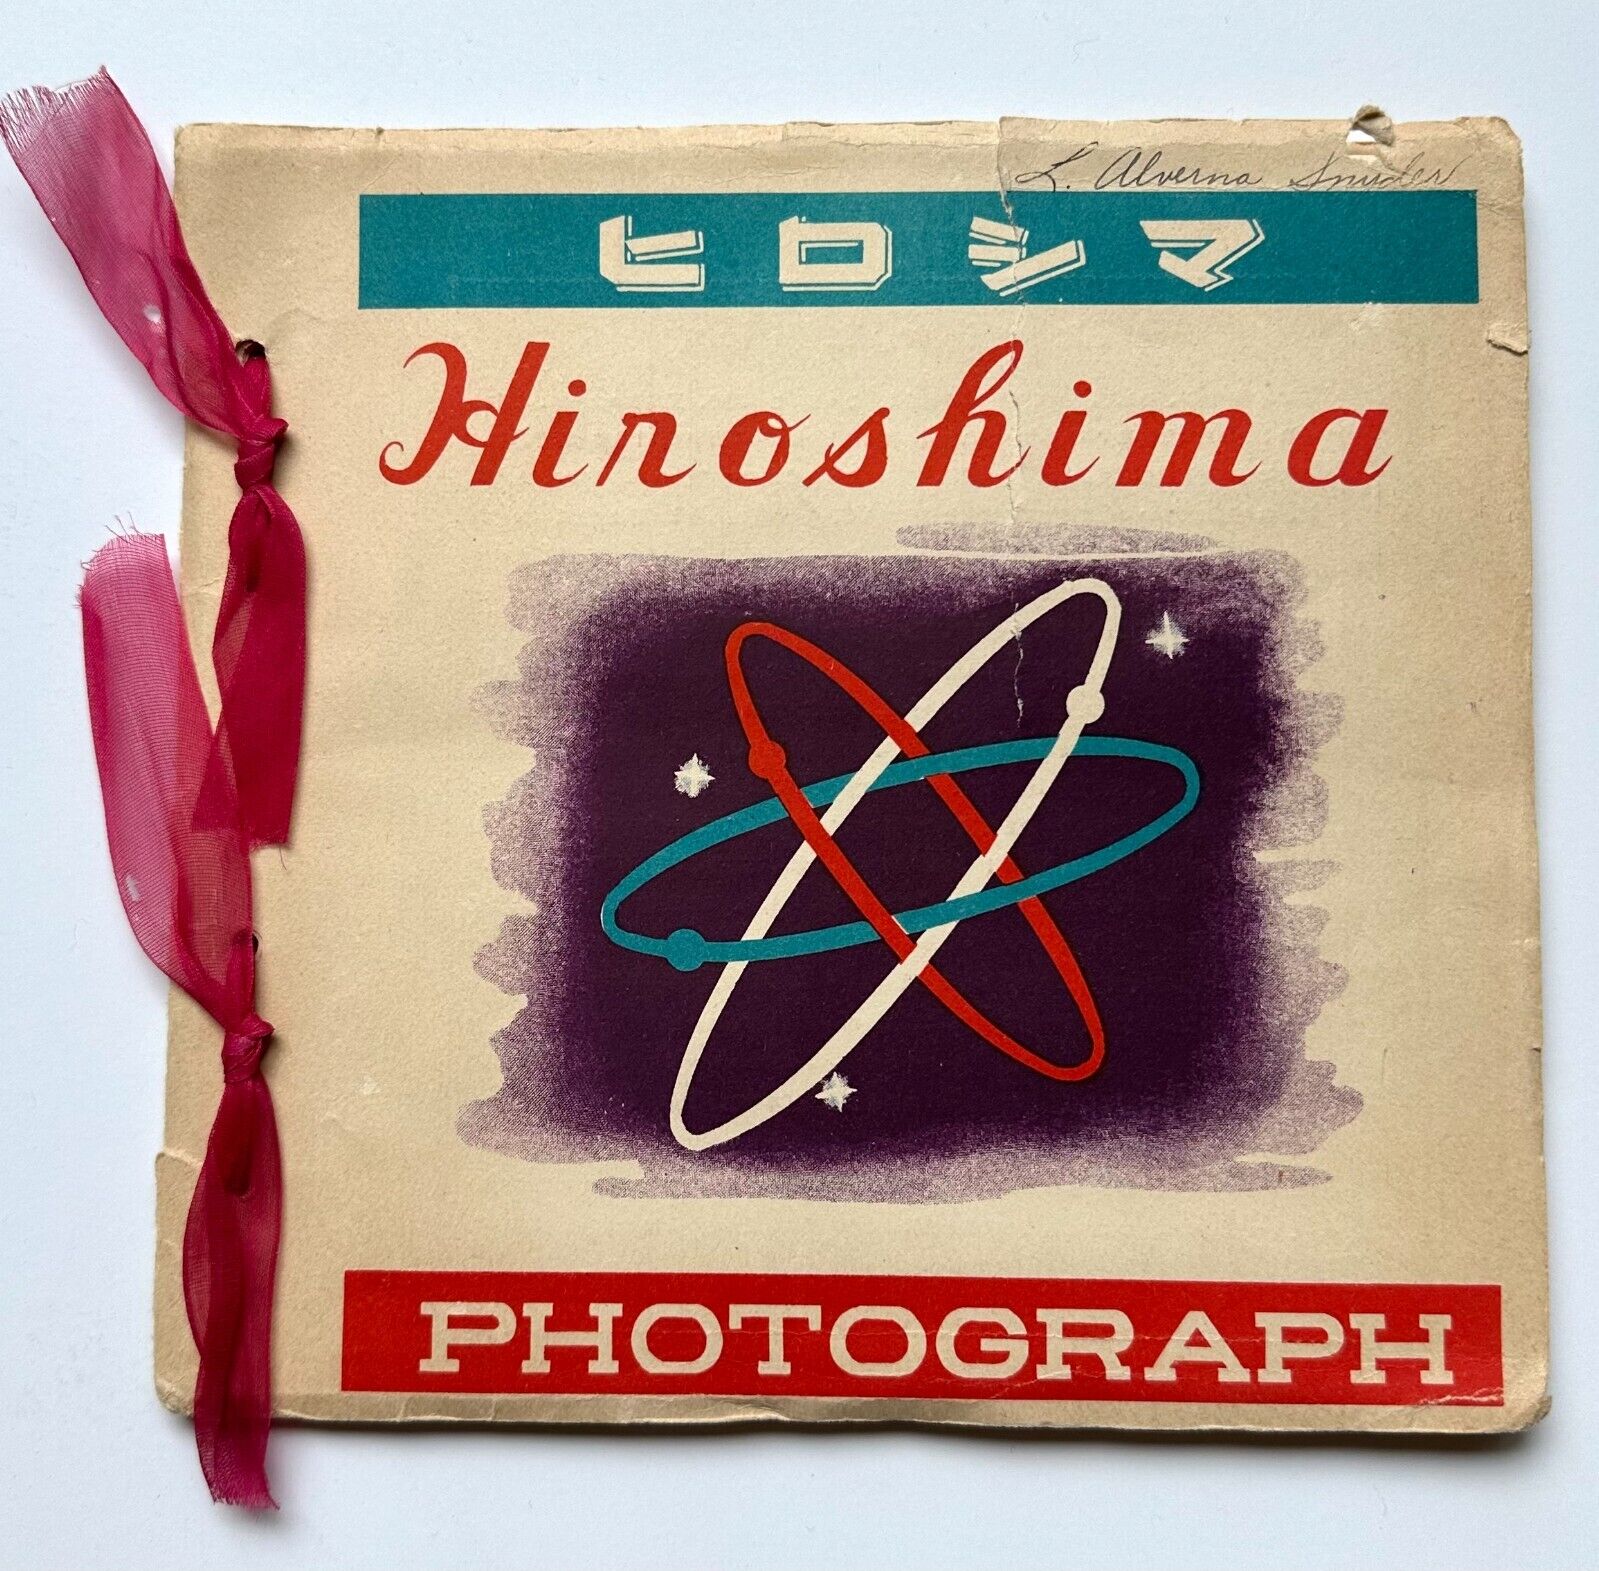 Orig. 1949 HIROSHIMA PHOTOGRAPH BOOK Yuichiro Sasaki Photos After Atomic Bomb